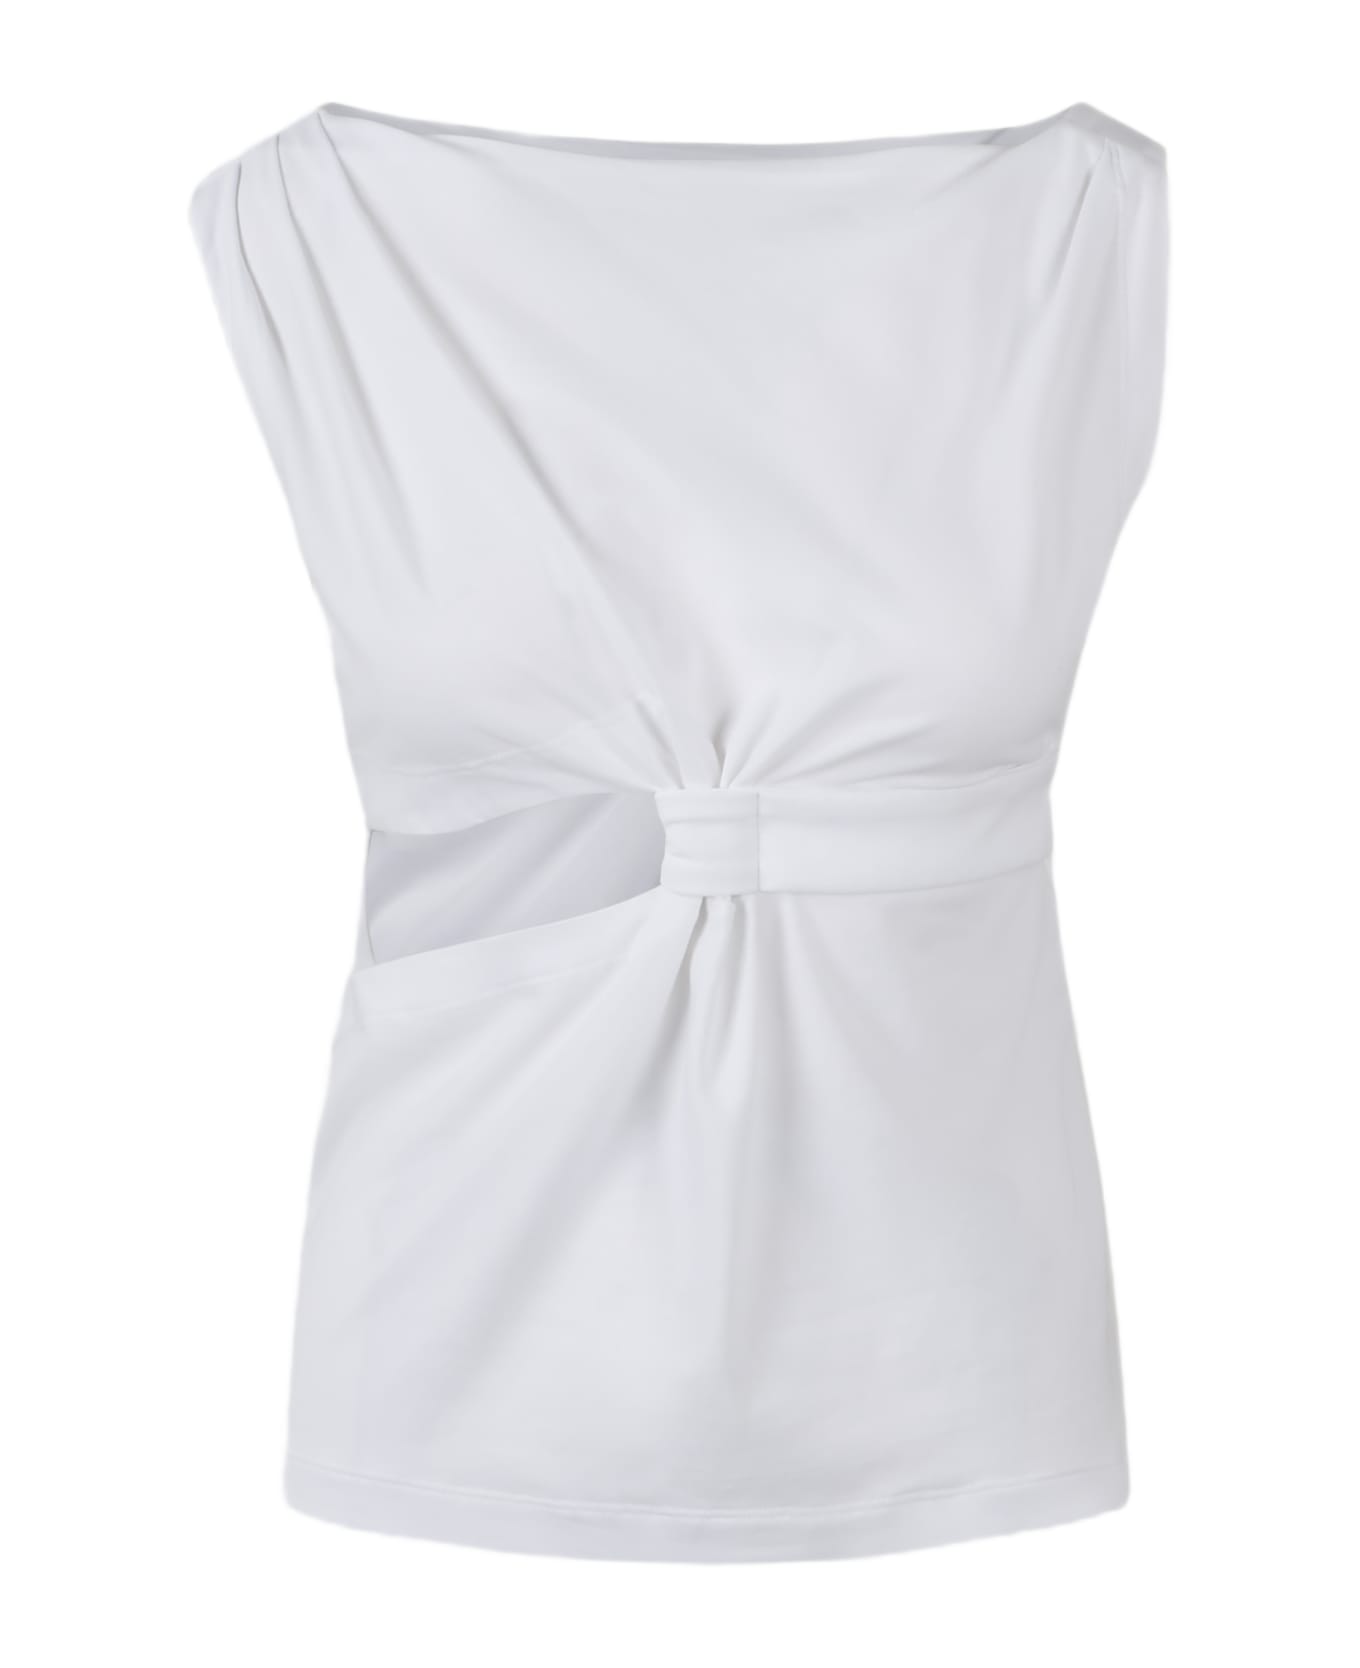 Alberta Ferretti Eco-friendly Jersey Knot Top - White